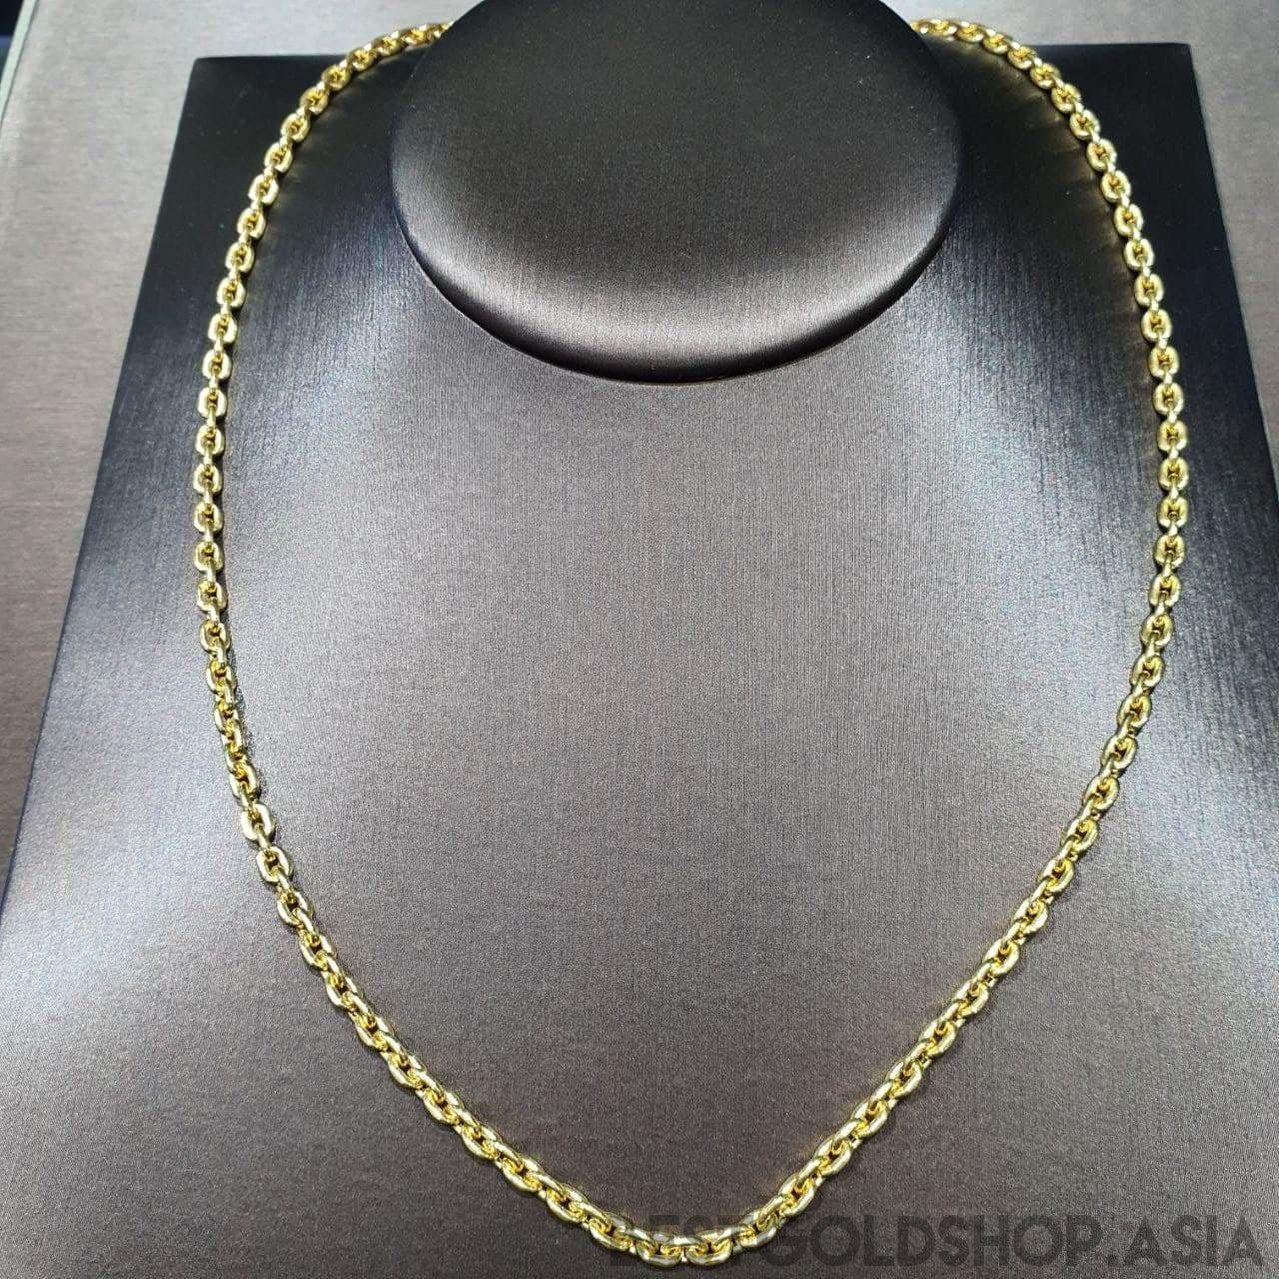 22k / 916 Gold Hollow Wan Zi Necklace-Necklaces-Best Gold Shop